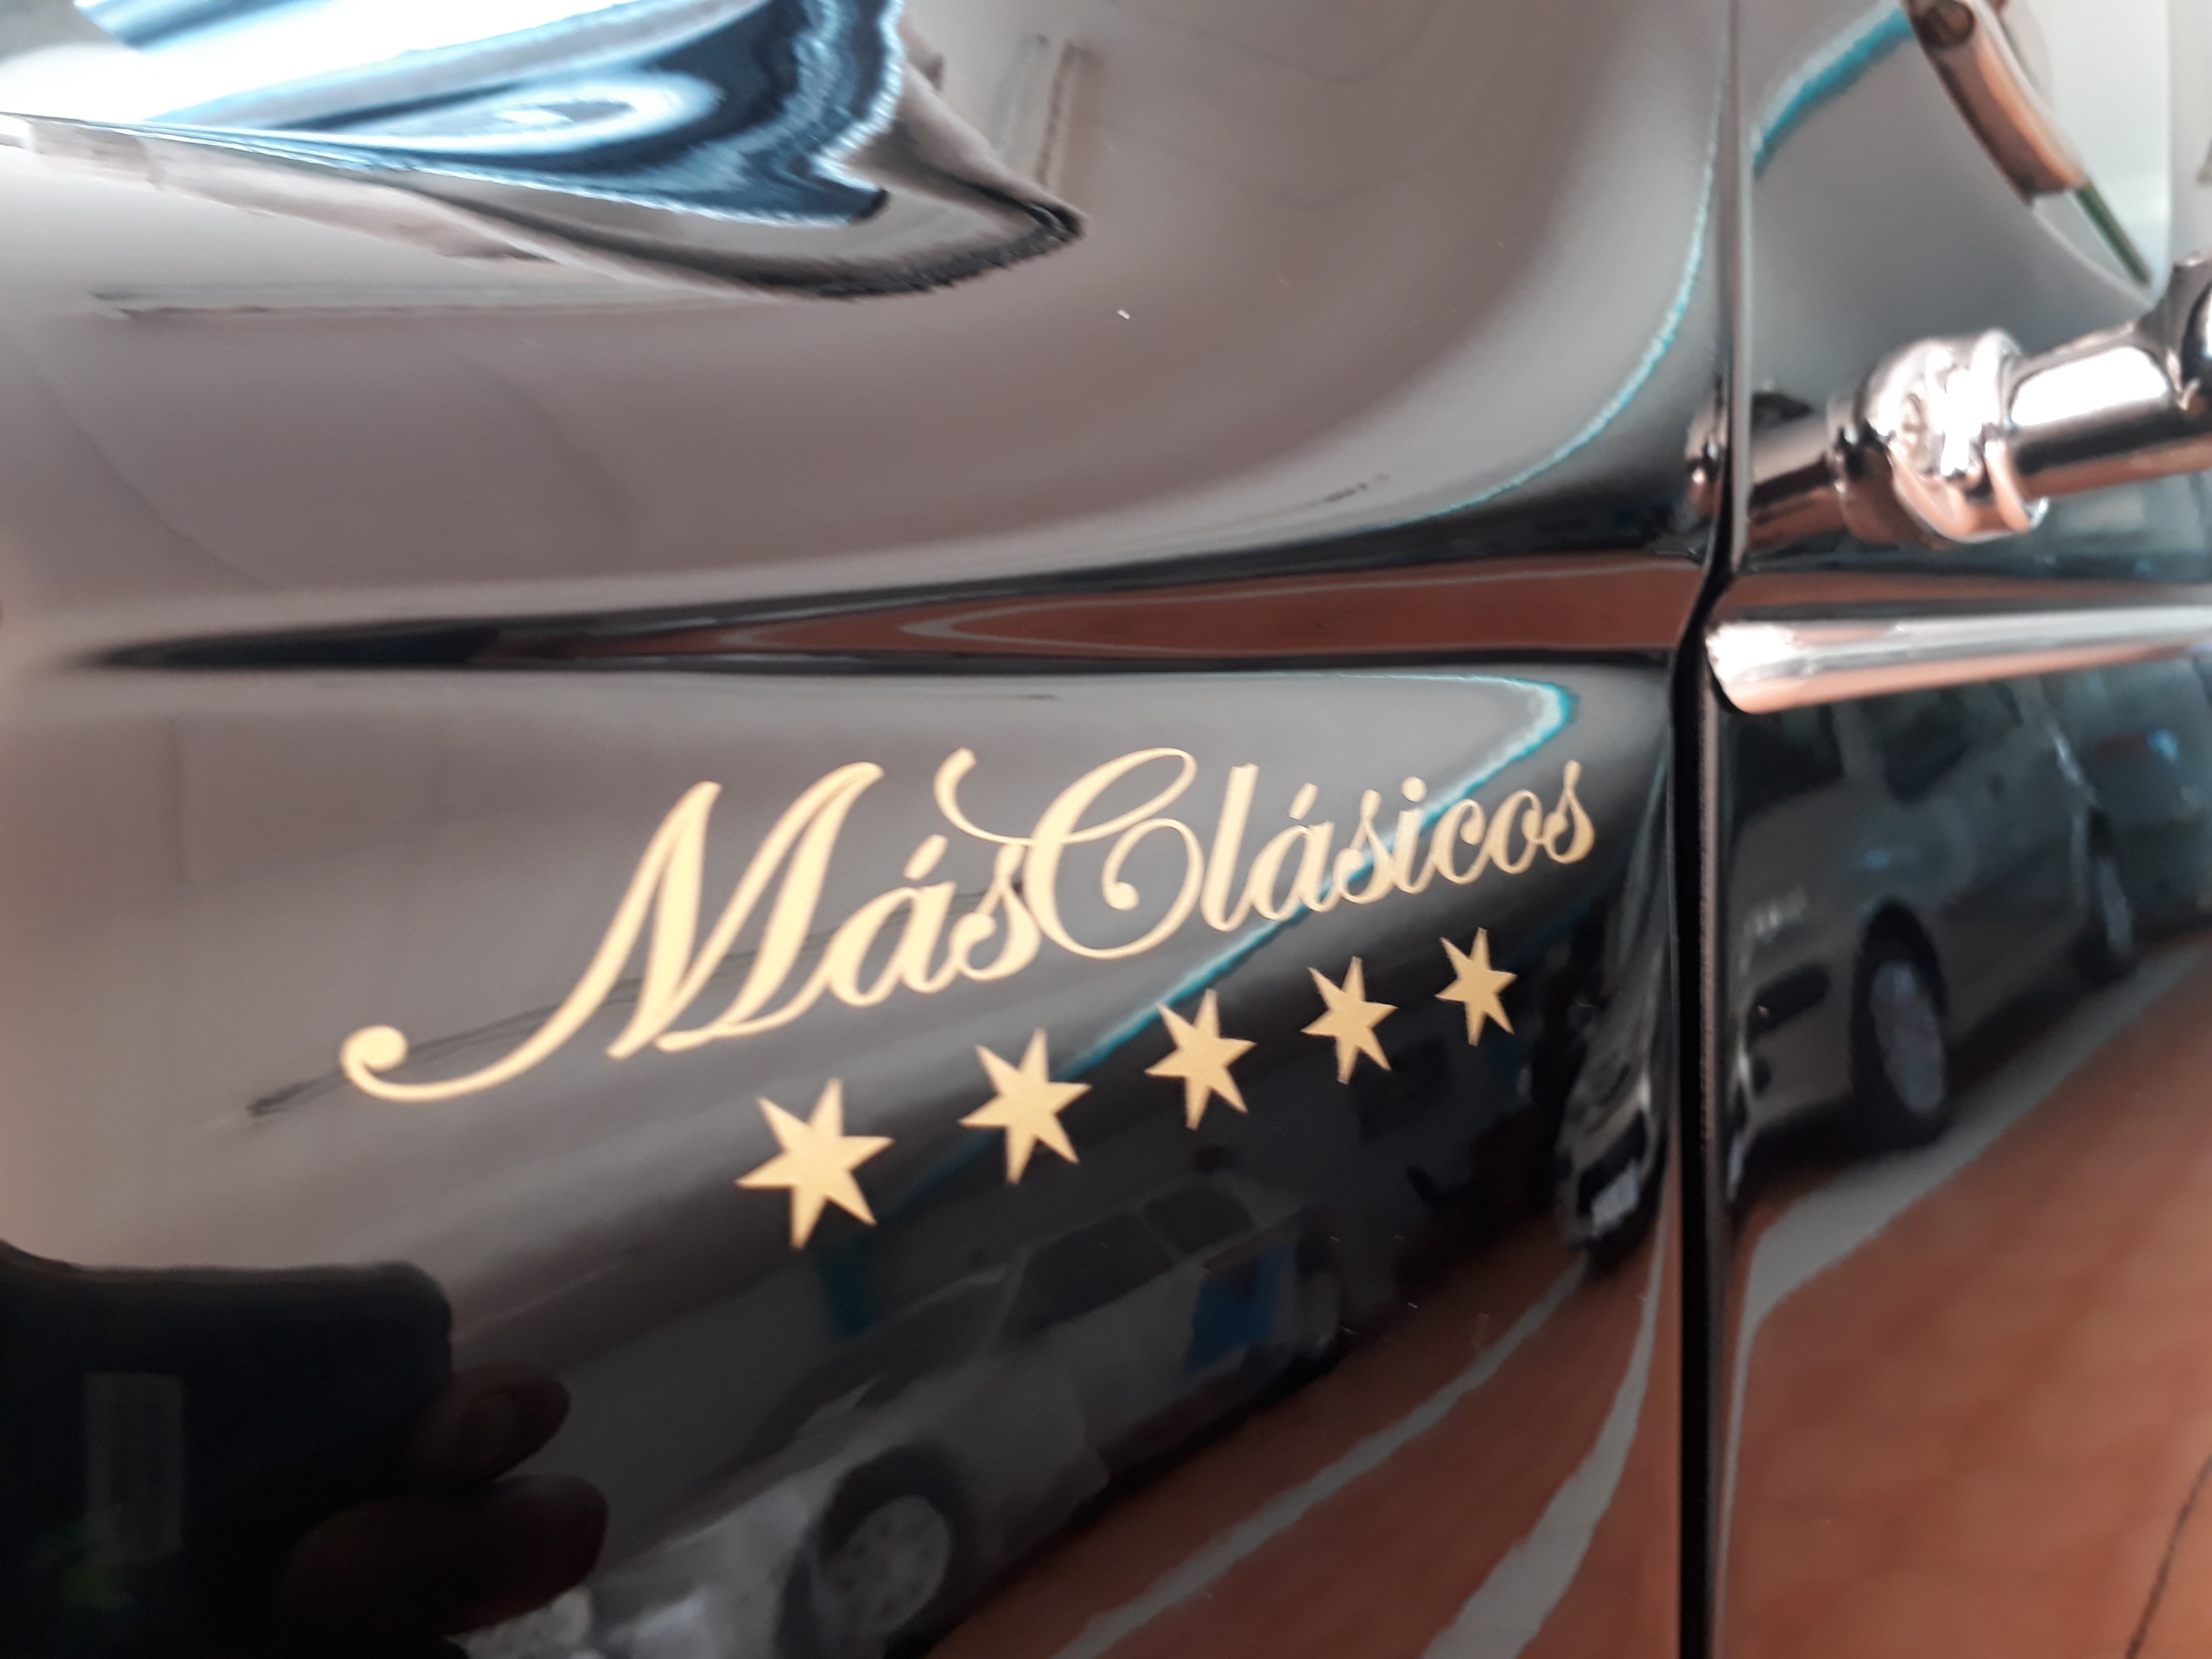 Imagen de la carrocería de un coche con el logotipo de Más Clásicos